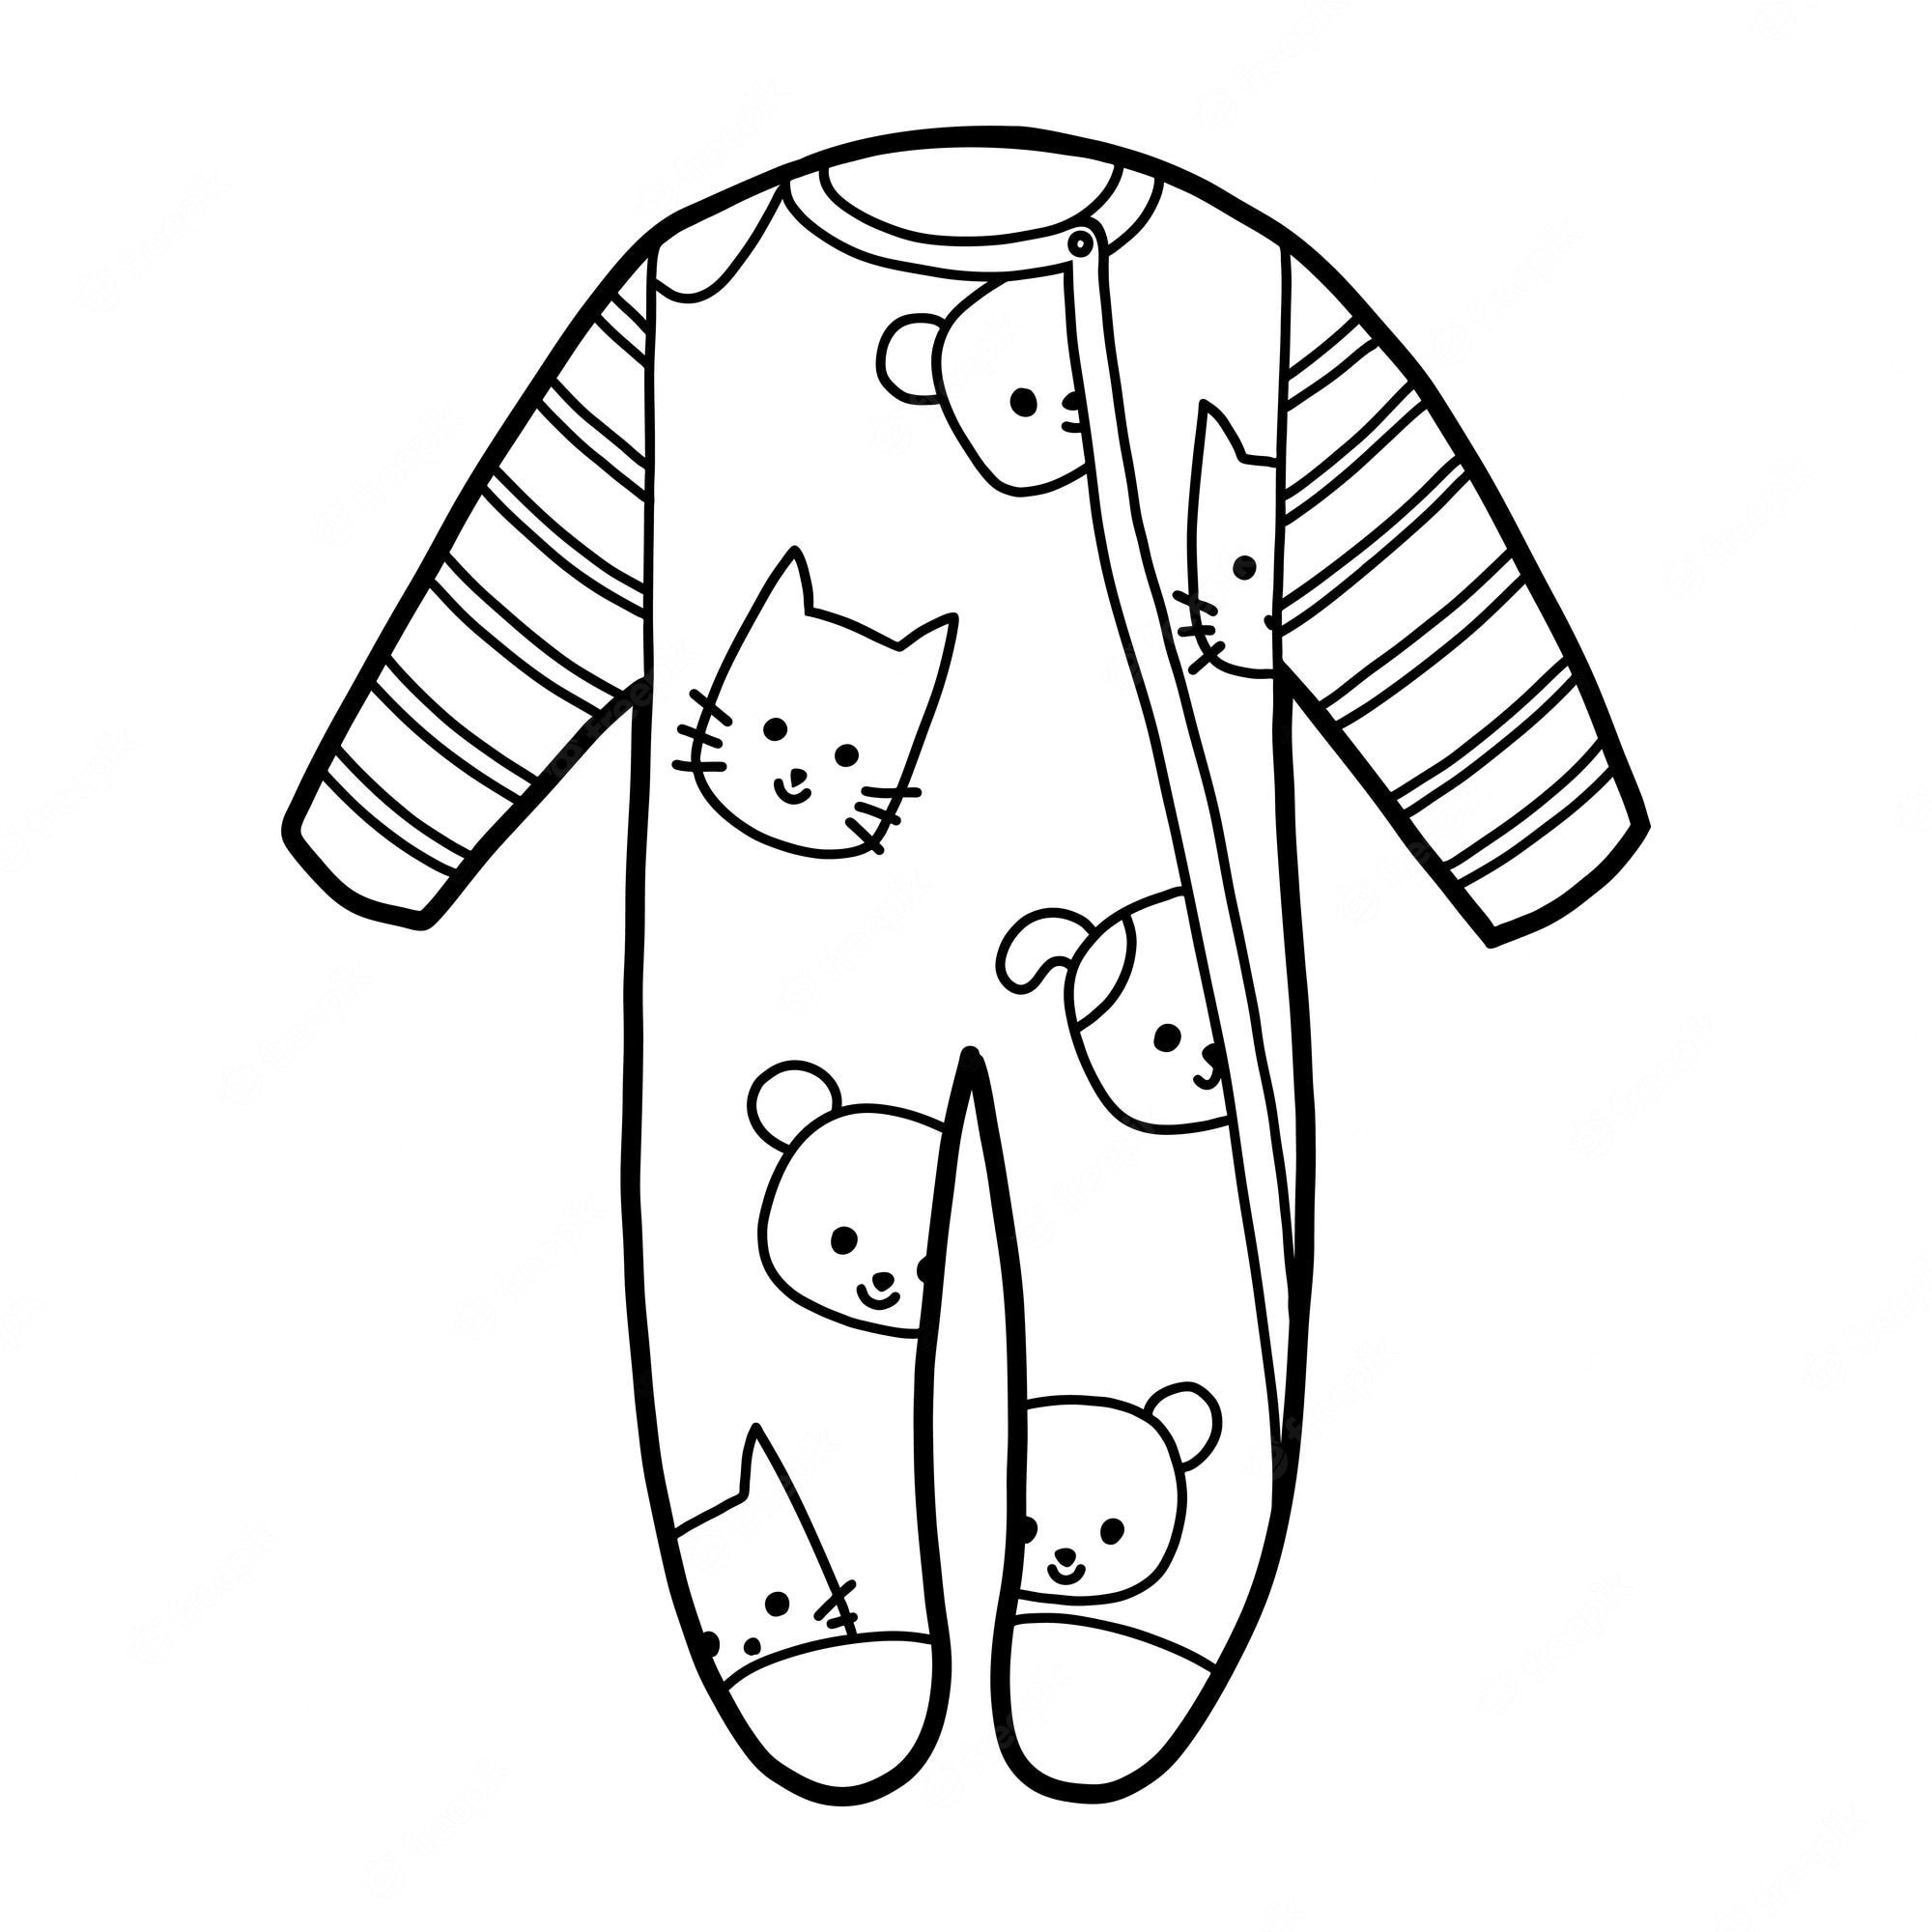 Пижама для детей #4